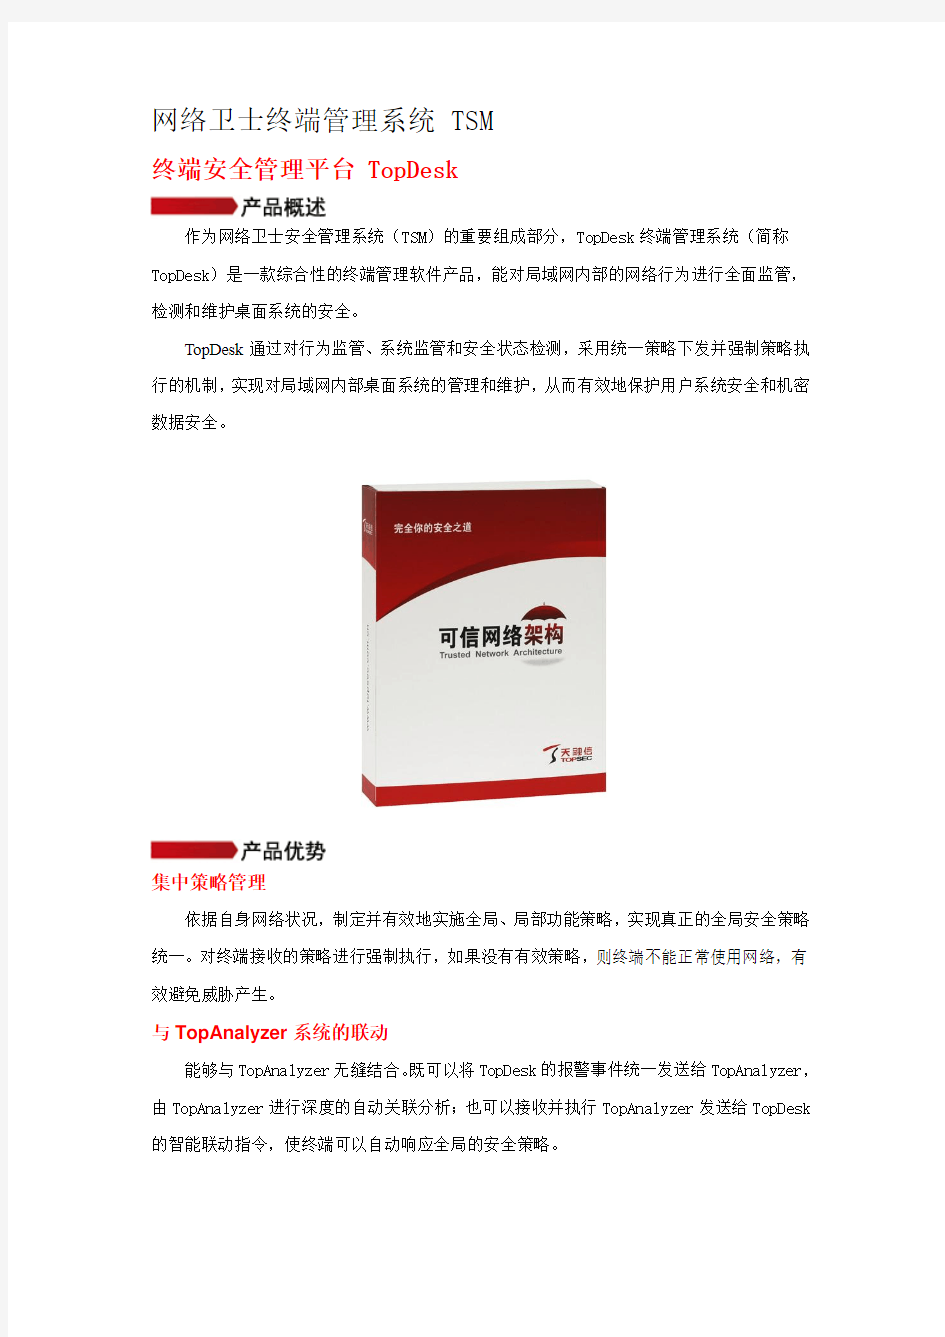 天融信终端安全管理系统TopDesk产品白皮书